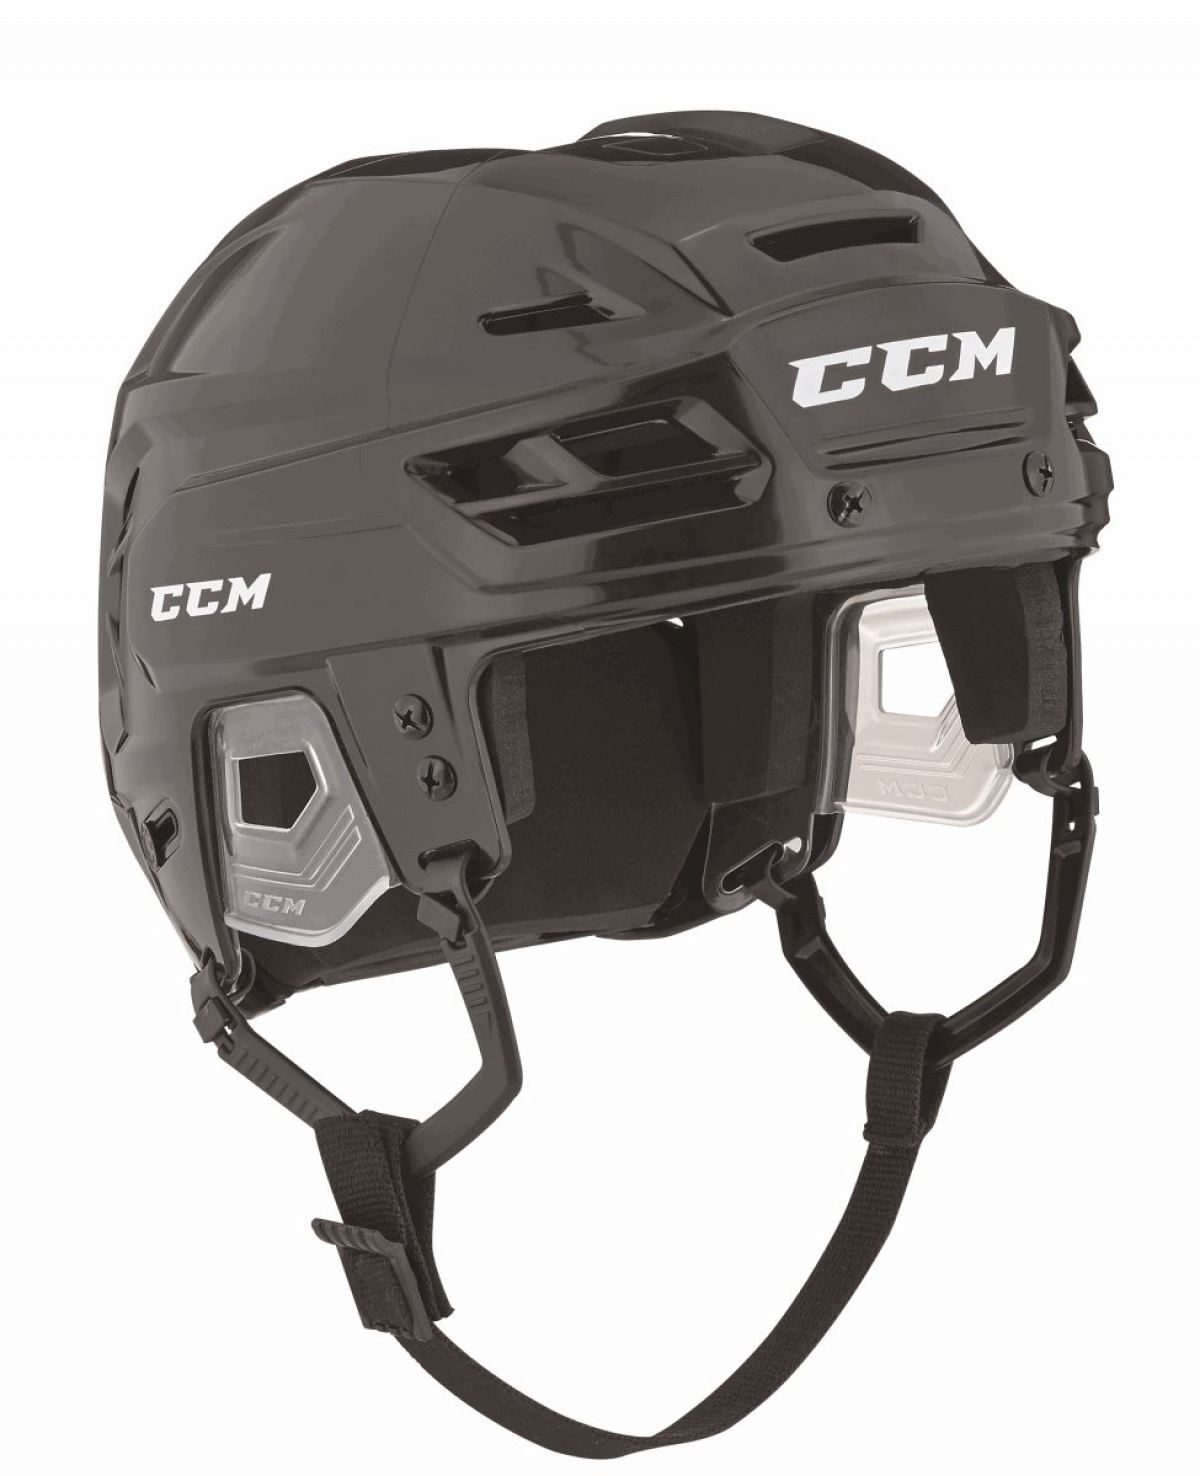 Ccm Helmet Size Chart